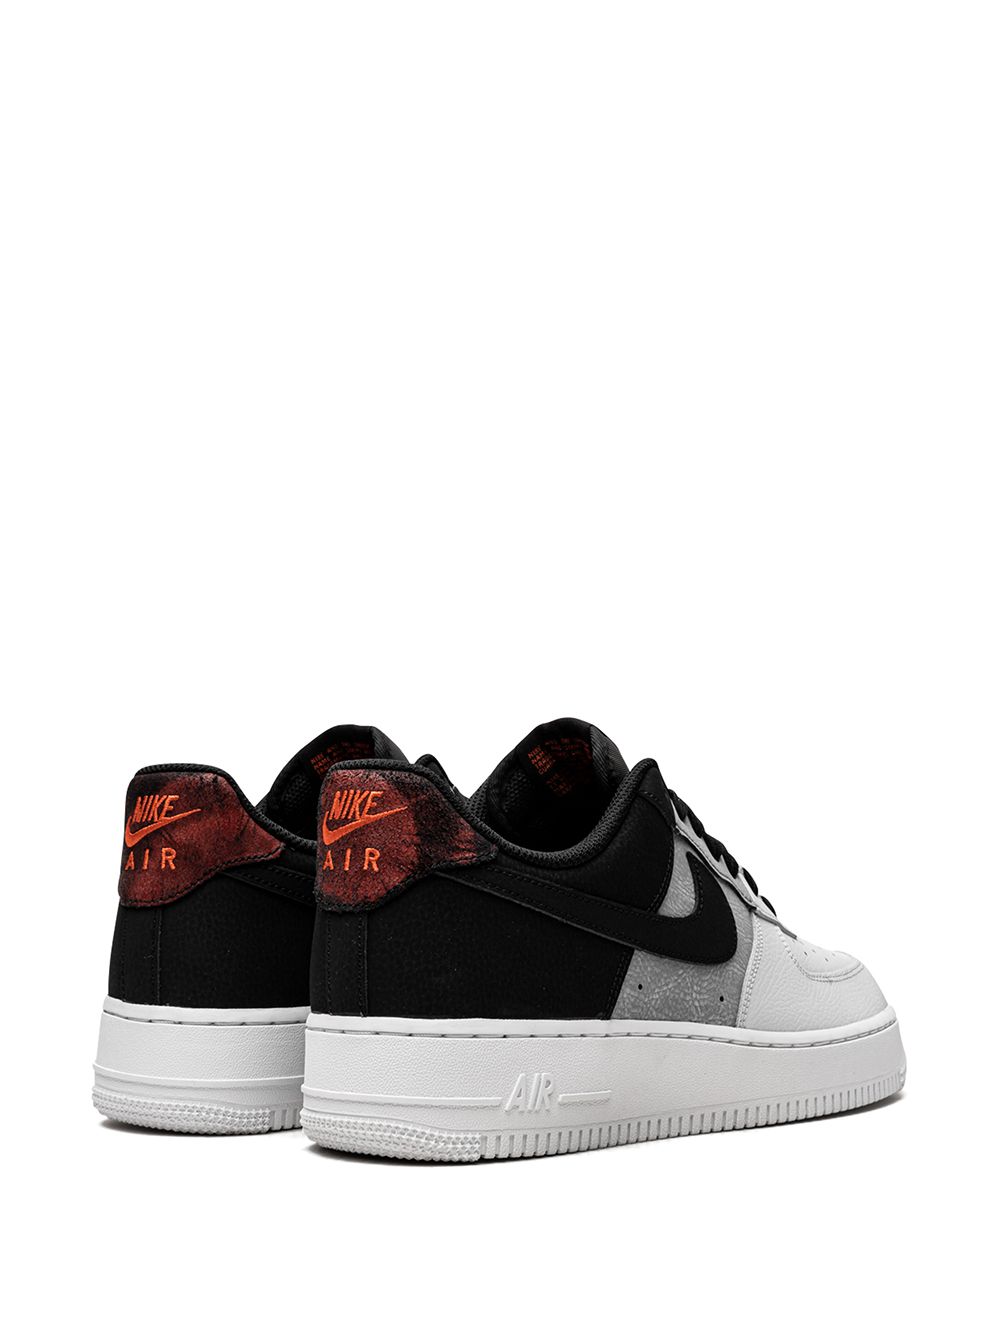 Shop Nike Air Force 1 '07 Lv8 "black/smoke Grey/white" Sneakers